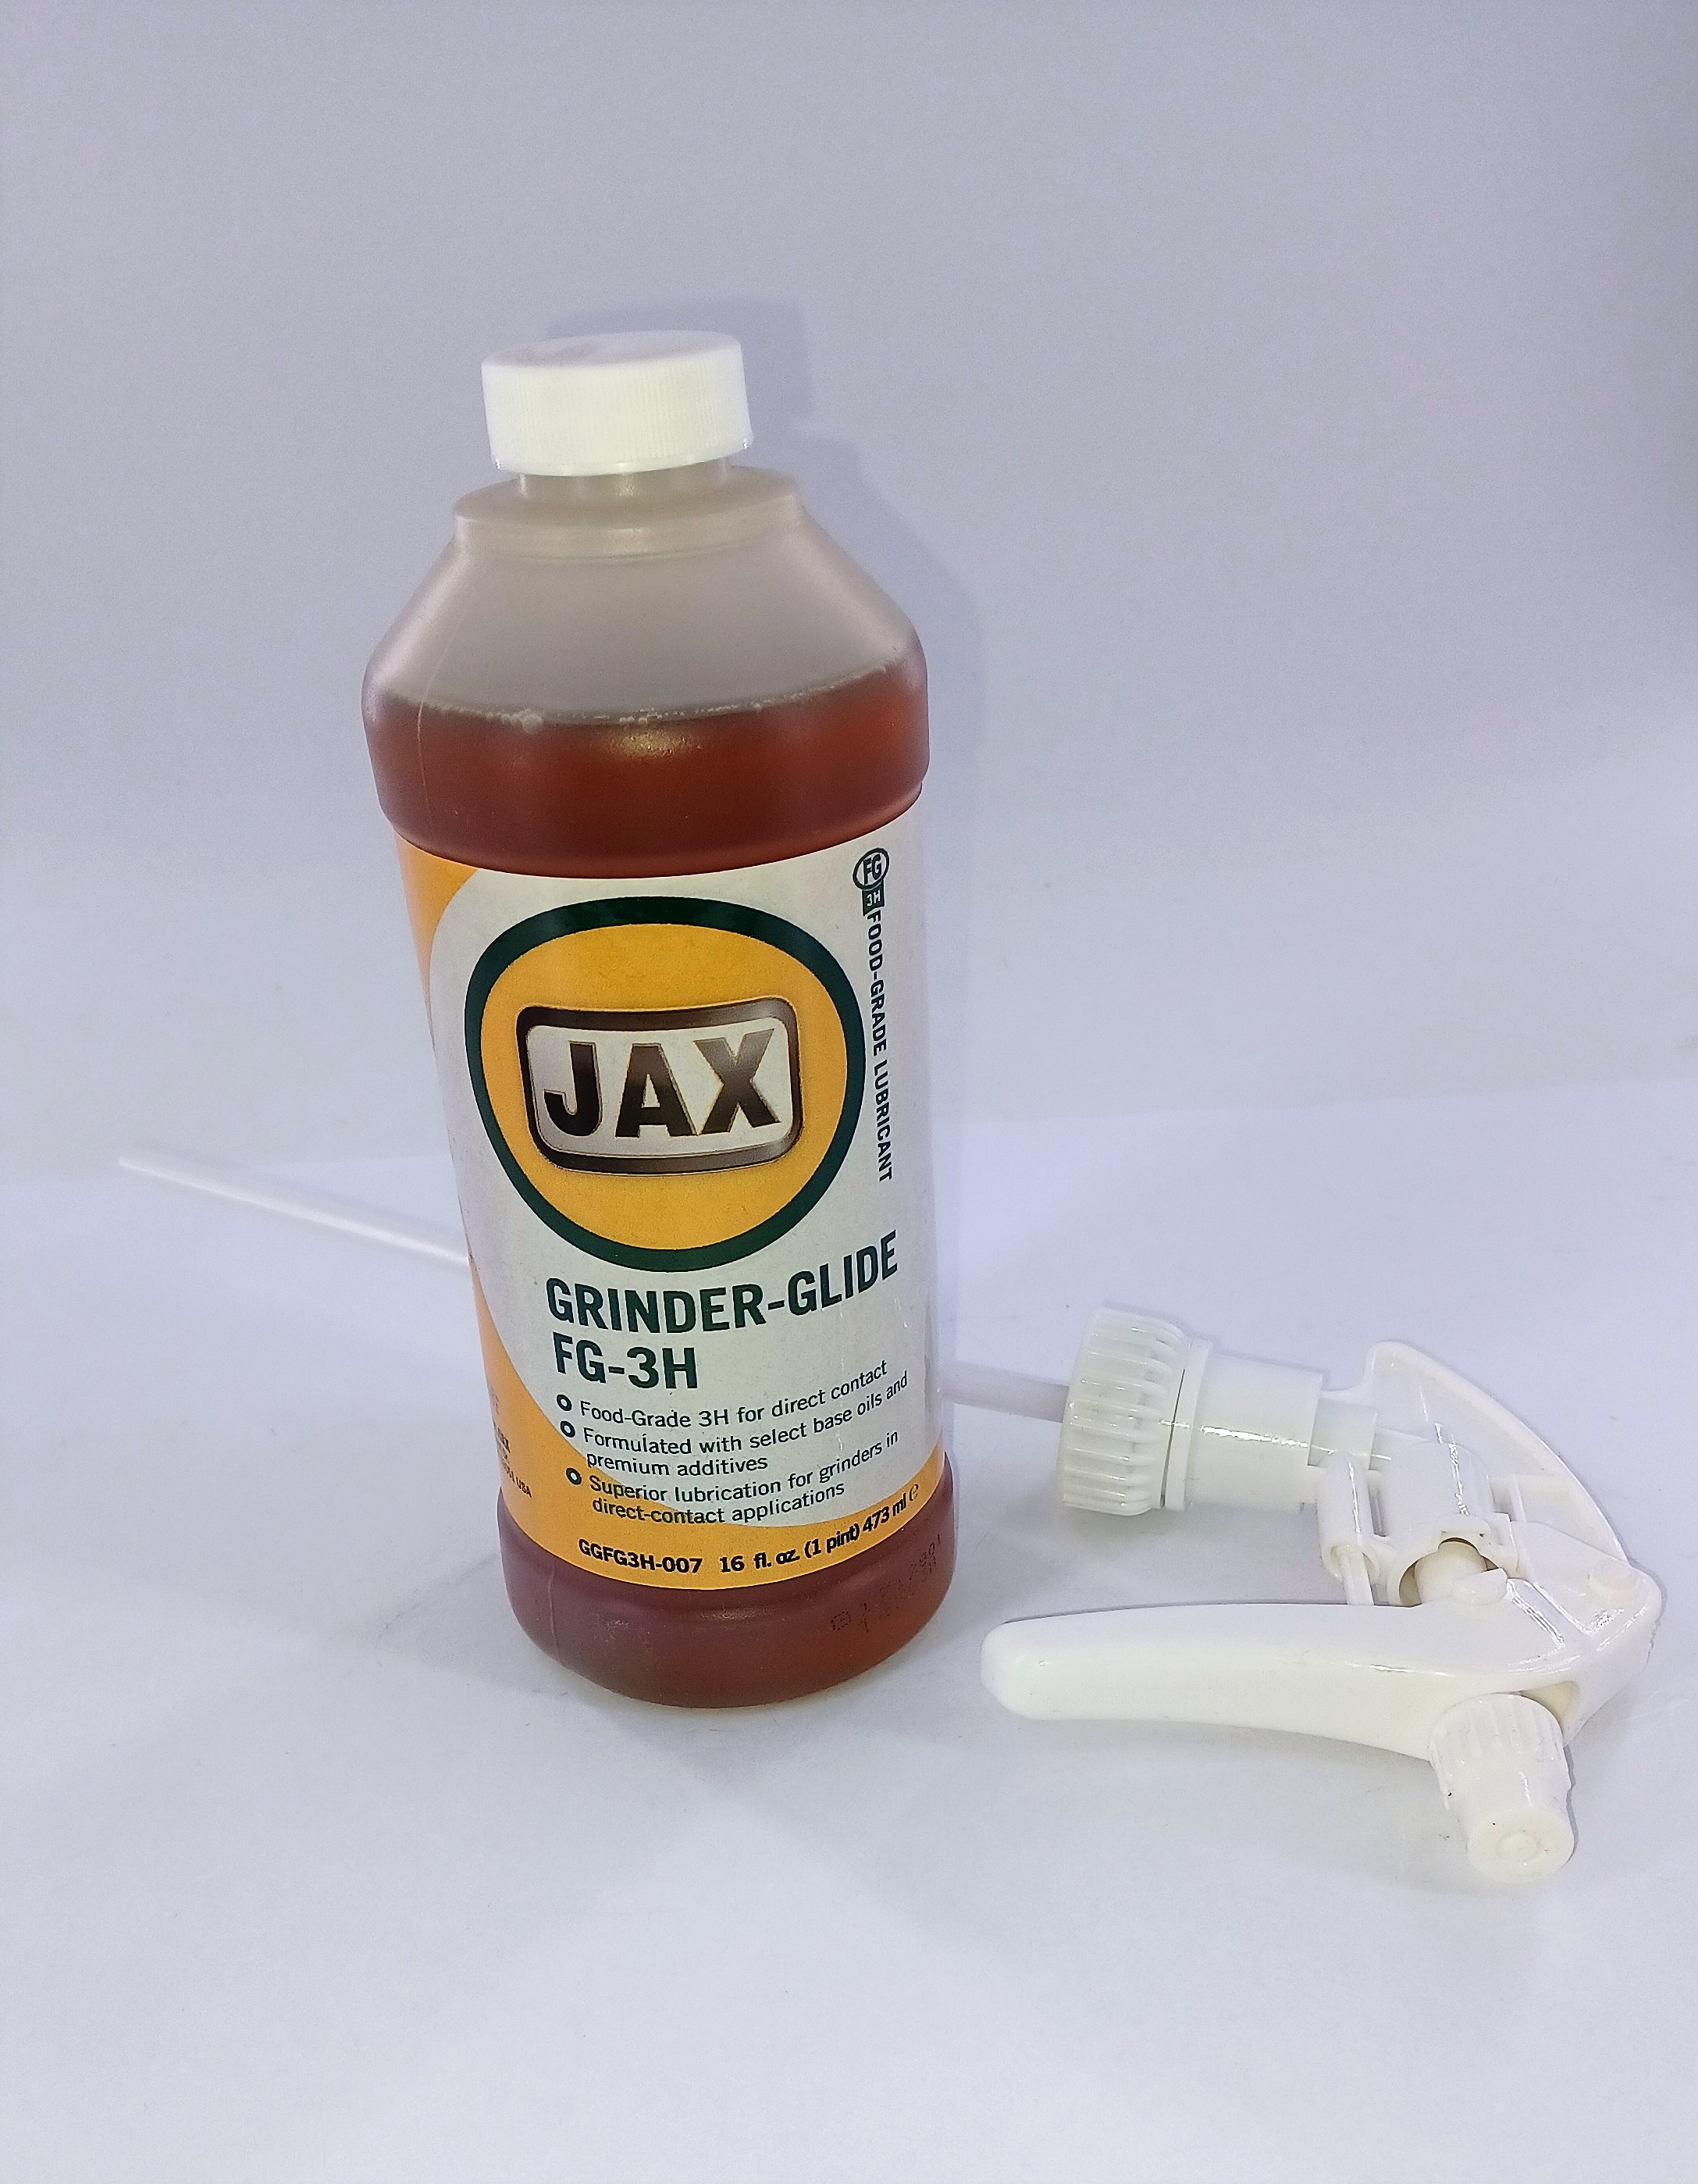 JAX Grinder-Glide FG-3H 473 ml mit Pumpsprühkopf